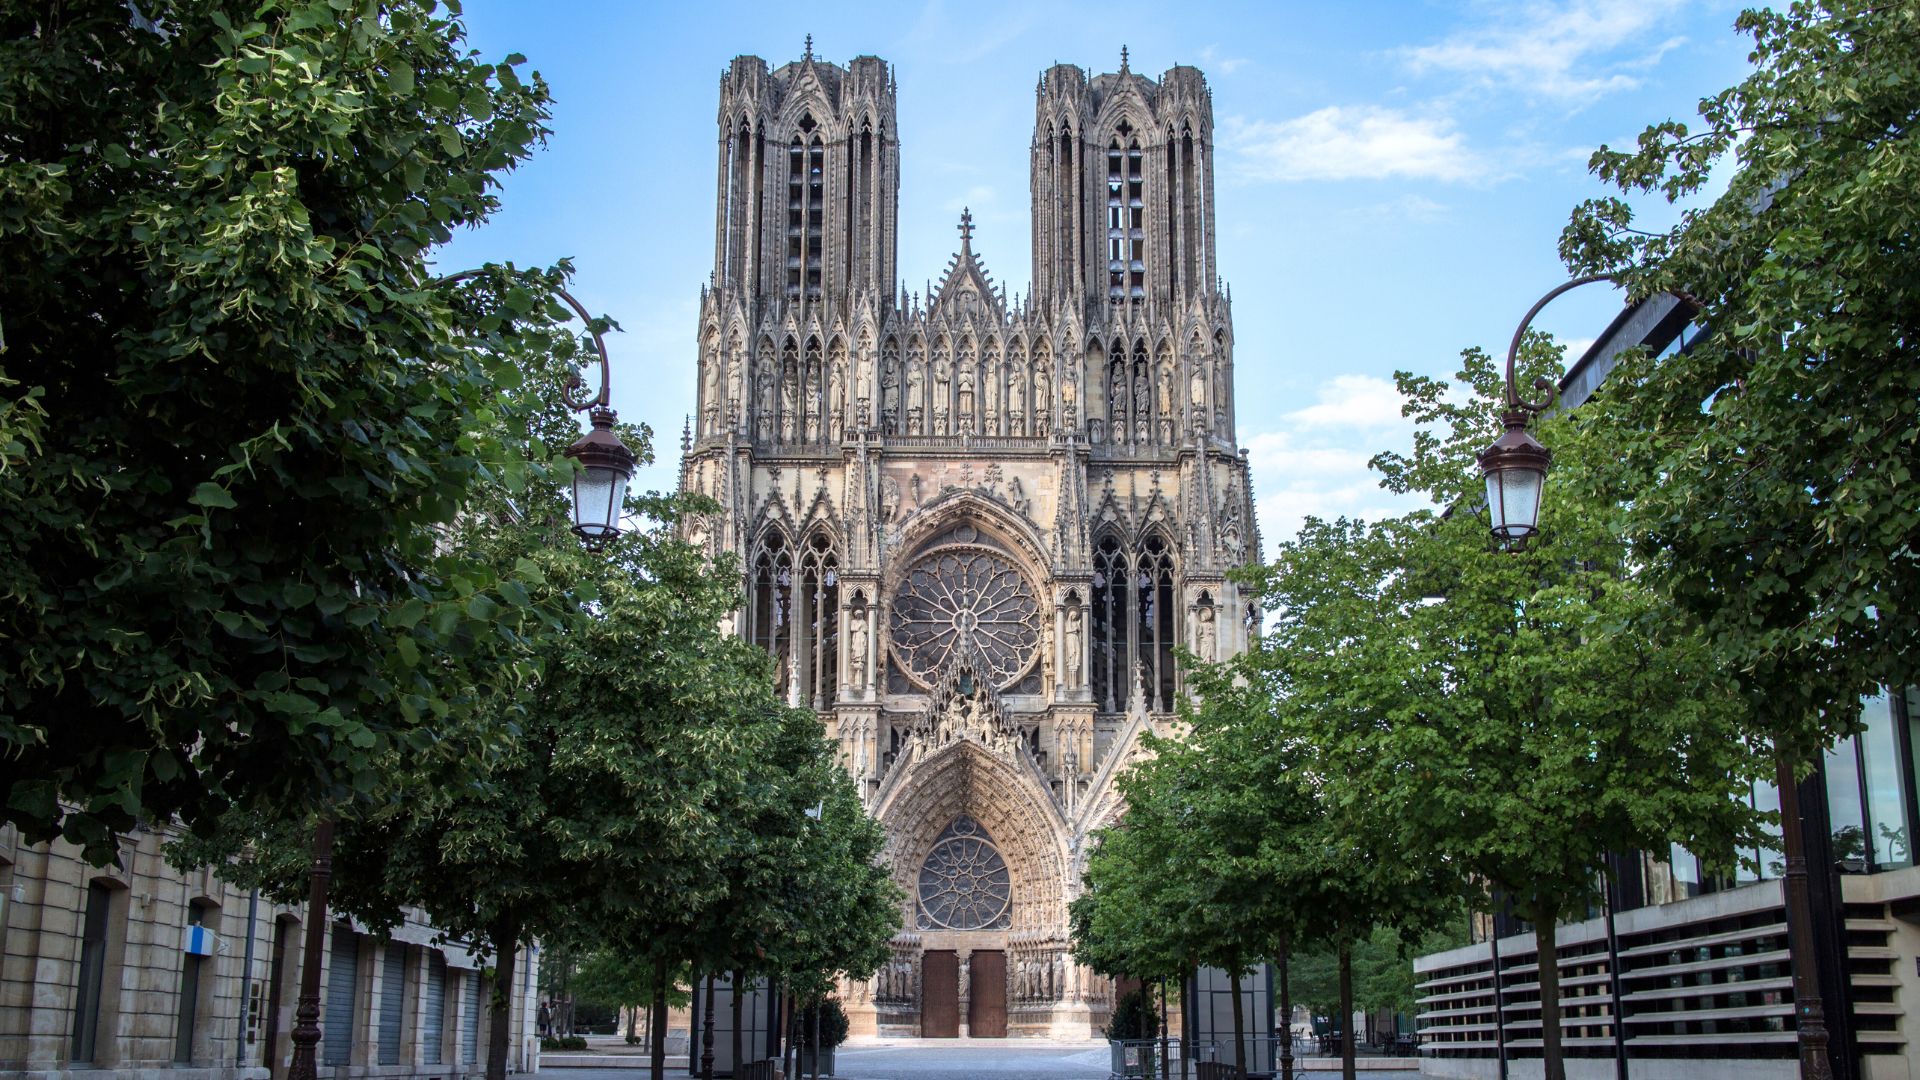 L'architecture impressionnante des sites historiques de Reims, incluant la Cathédrale Notre-Dame classée au patrimoine mondial de l'UNESCO.